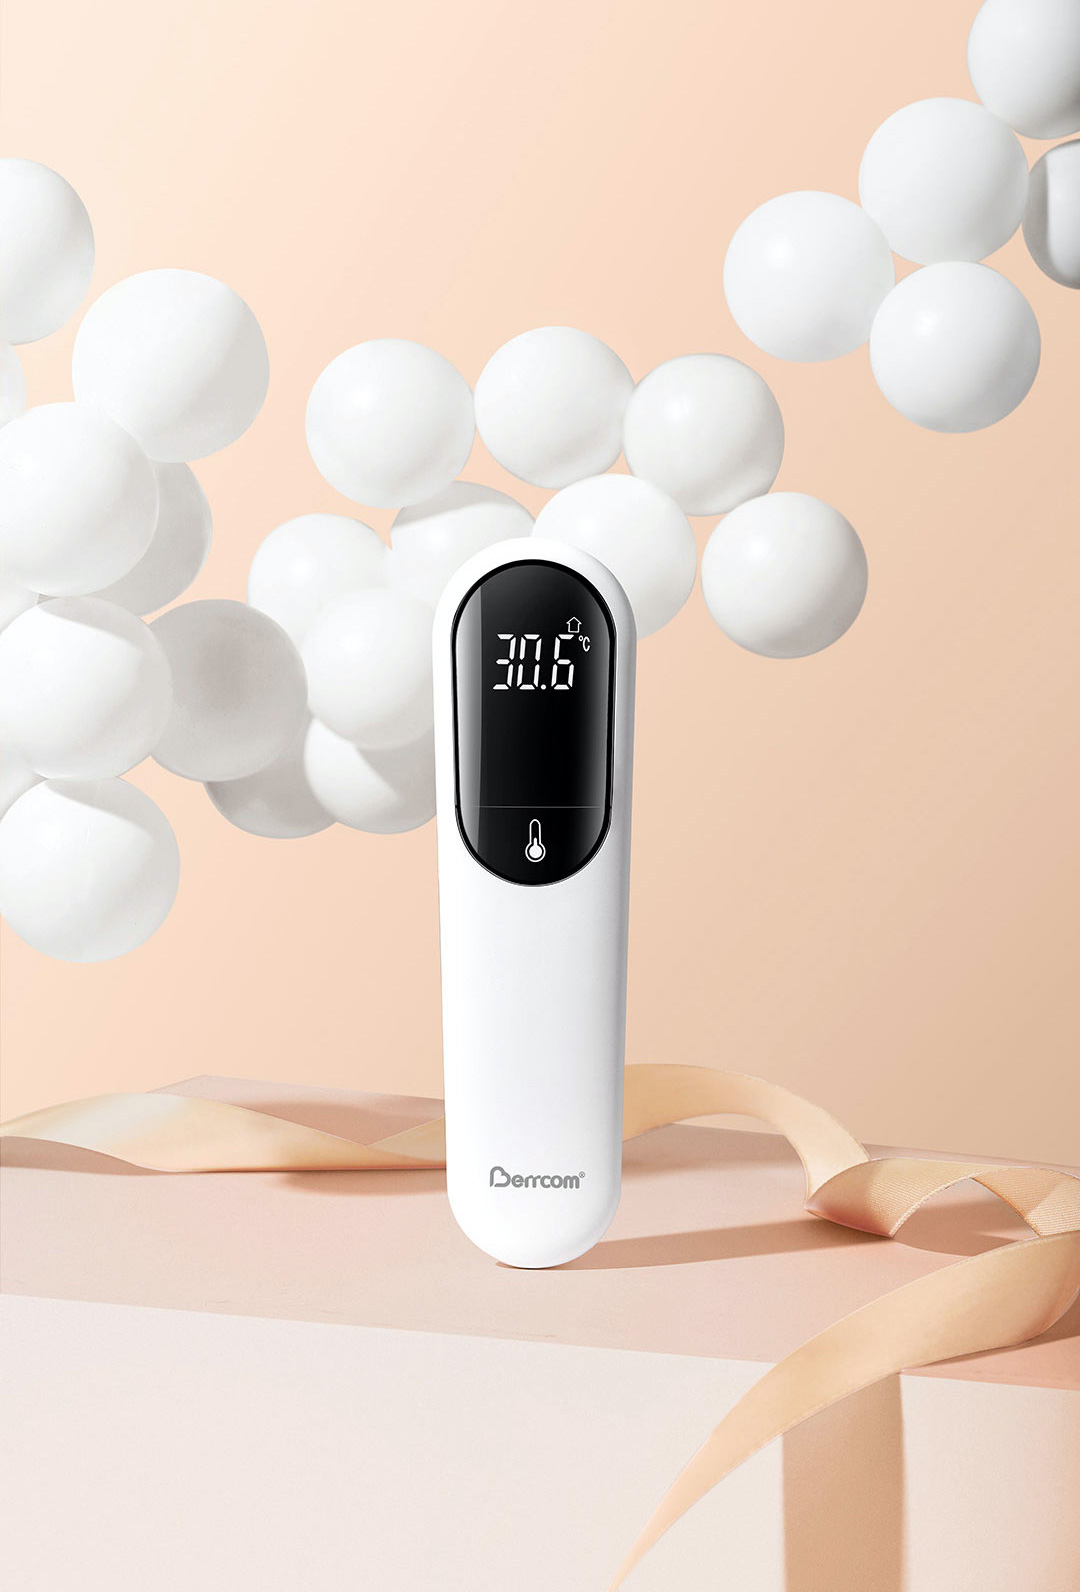 Xiaomi Berrcom Non-Contact Digital Infrared Thermometer JXB-305